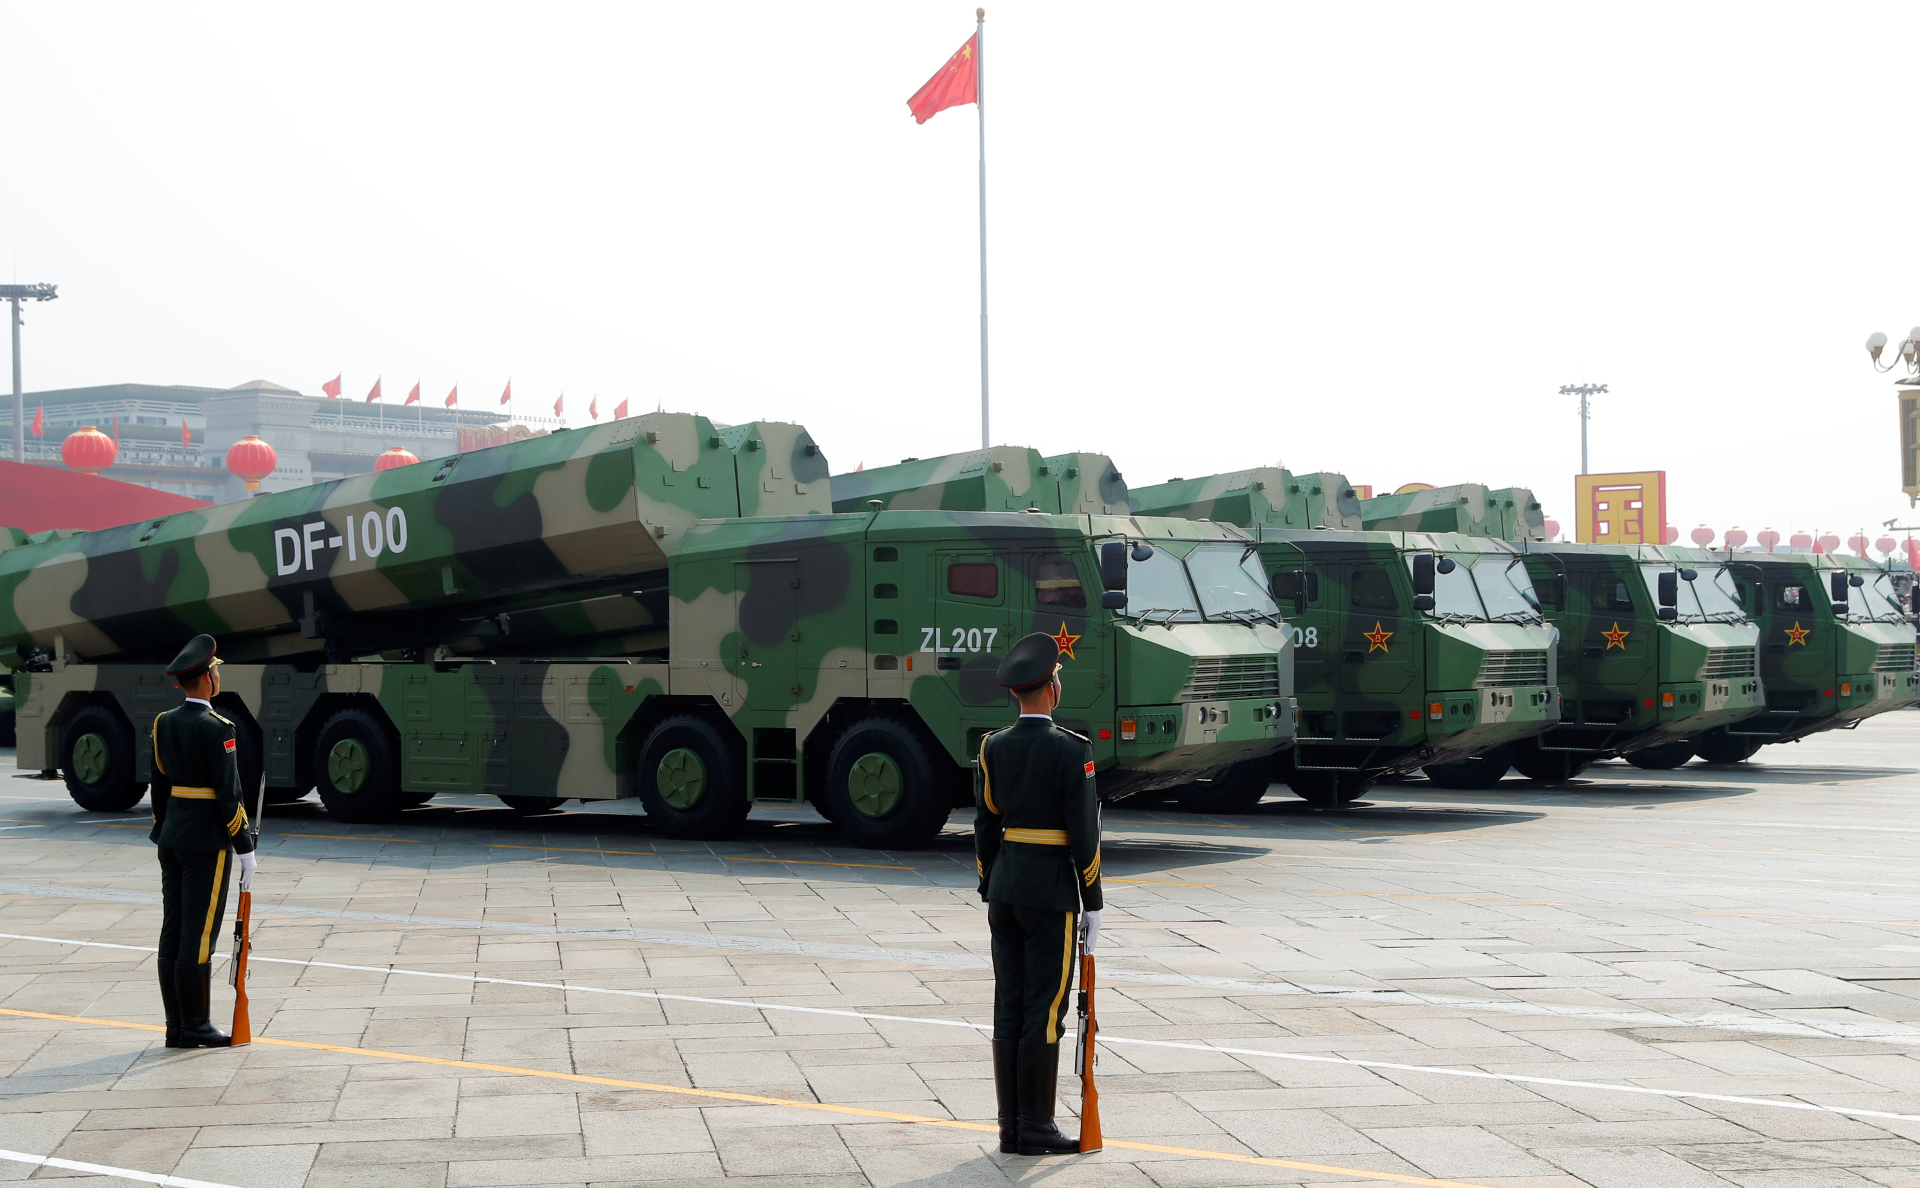 Гиперзвуковые крылатые ракеты DF-100 на военном параде, приуроченном к 70-летию образования Китая, в Пекине. 1 октября 2019 года